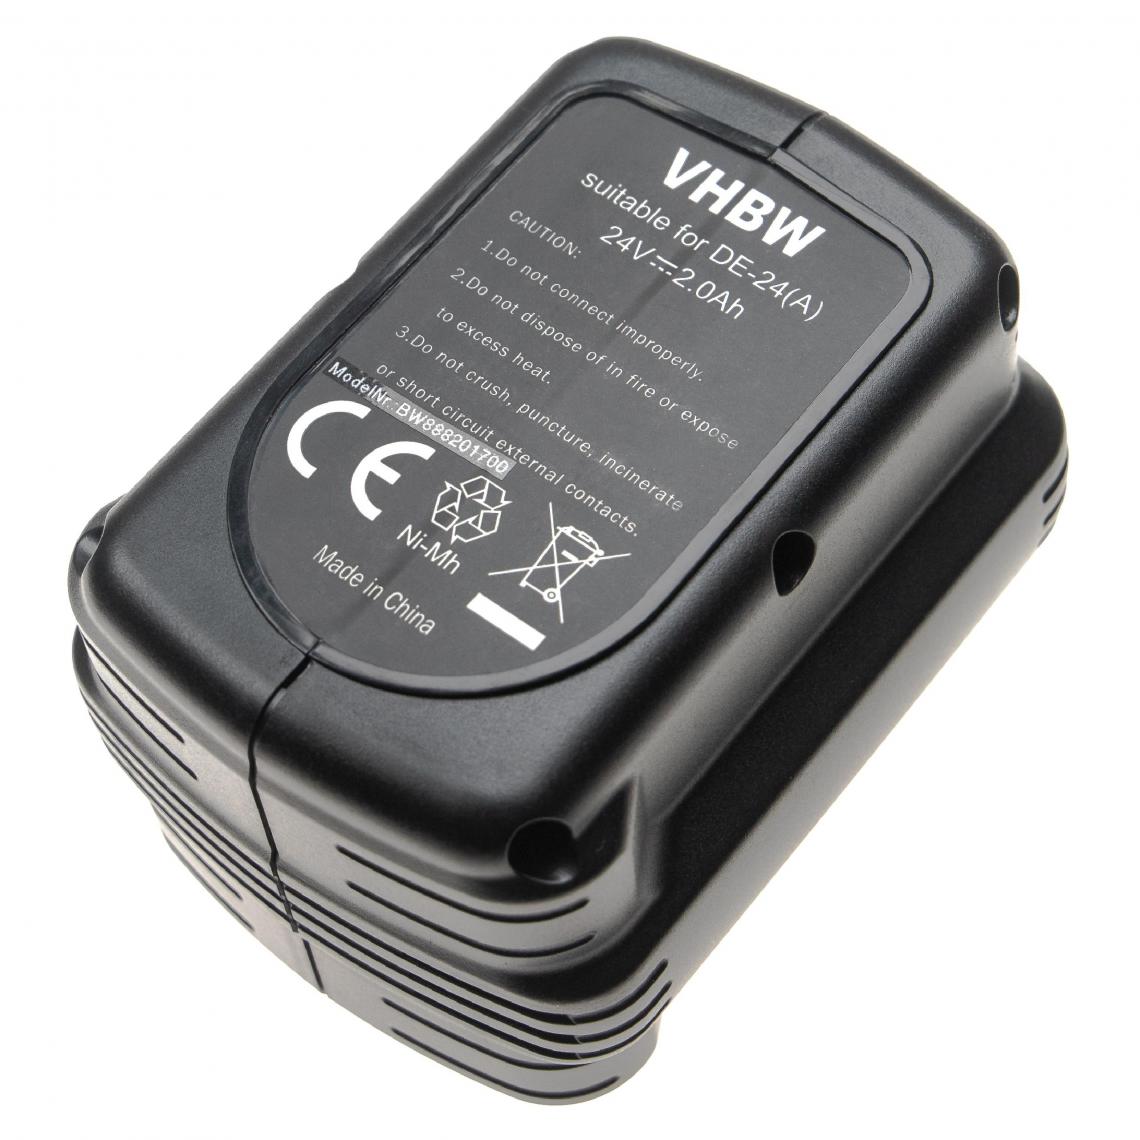 Vhbw - vhbw Batterie compatible avec Dewalt DW017K2, DW017K2H, DW017N outil électrique (2000mAh NiMH 24V) - Clouterie